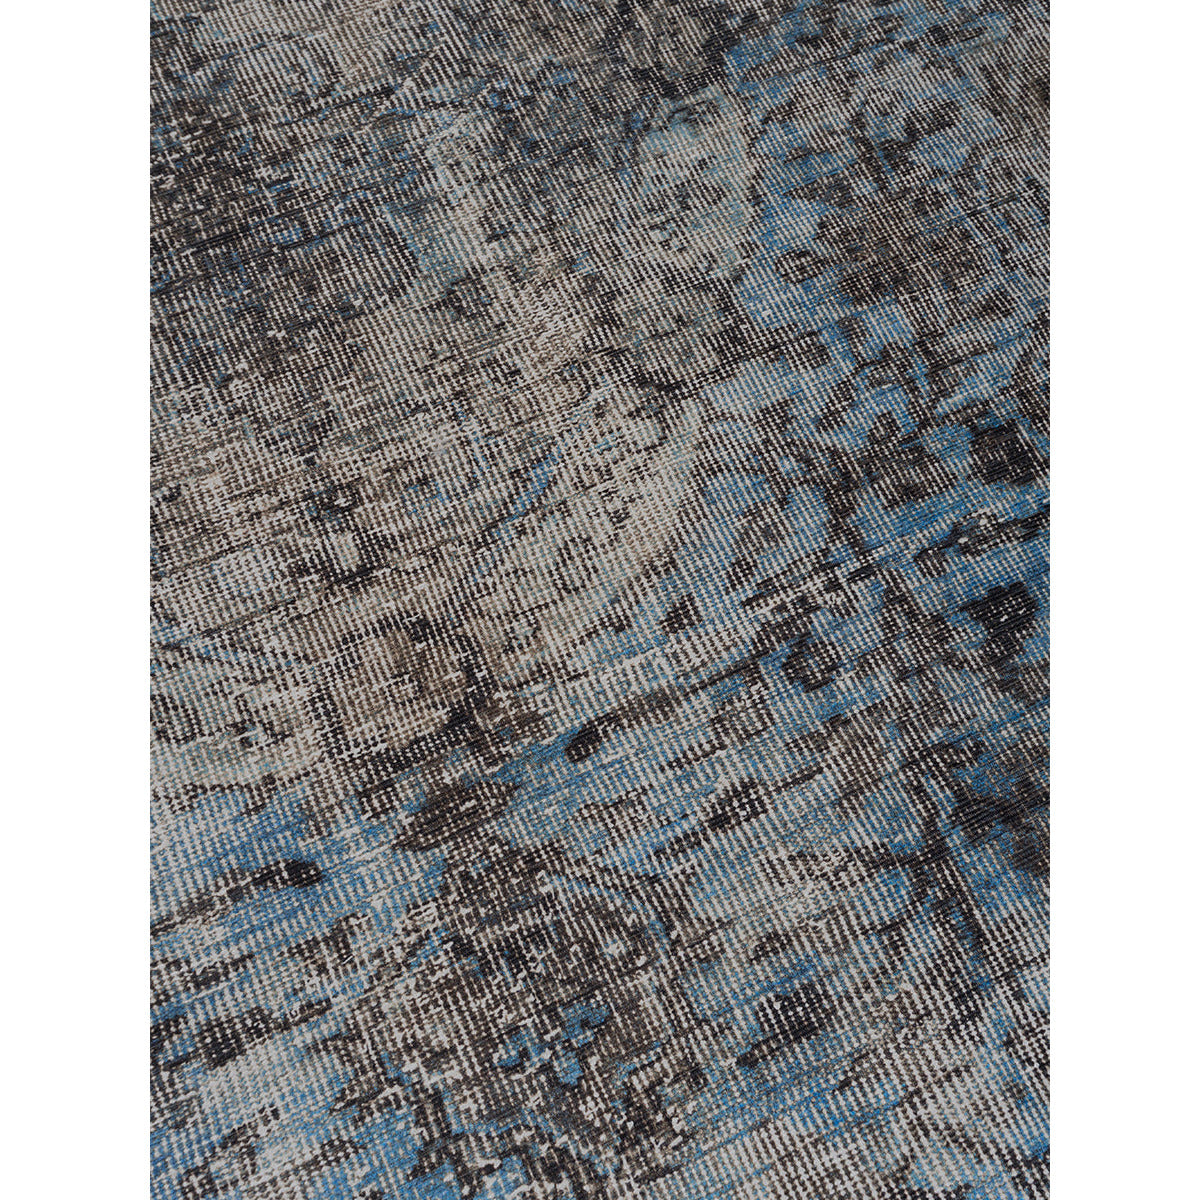 Vloerkleed Mila Groen/ Blauw 160 x 230 cm